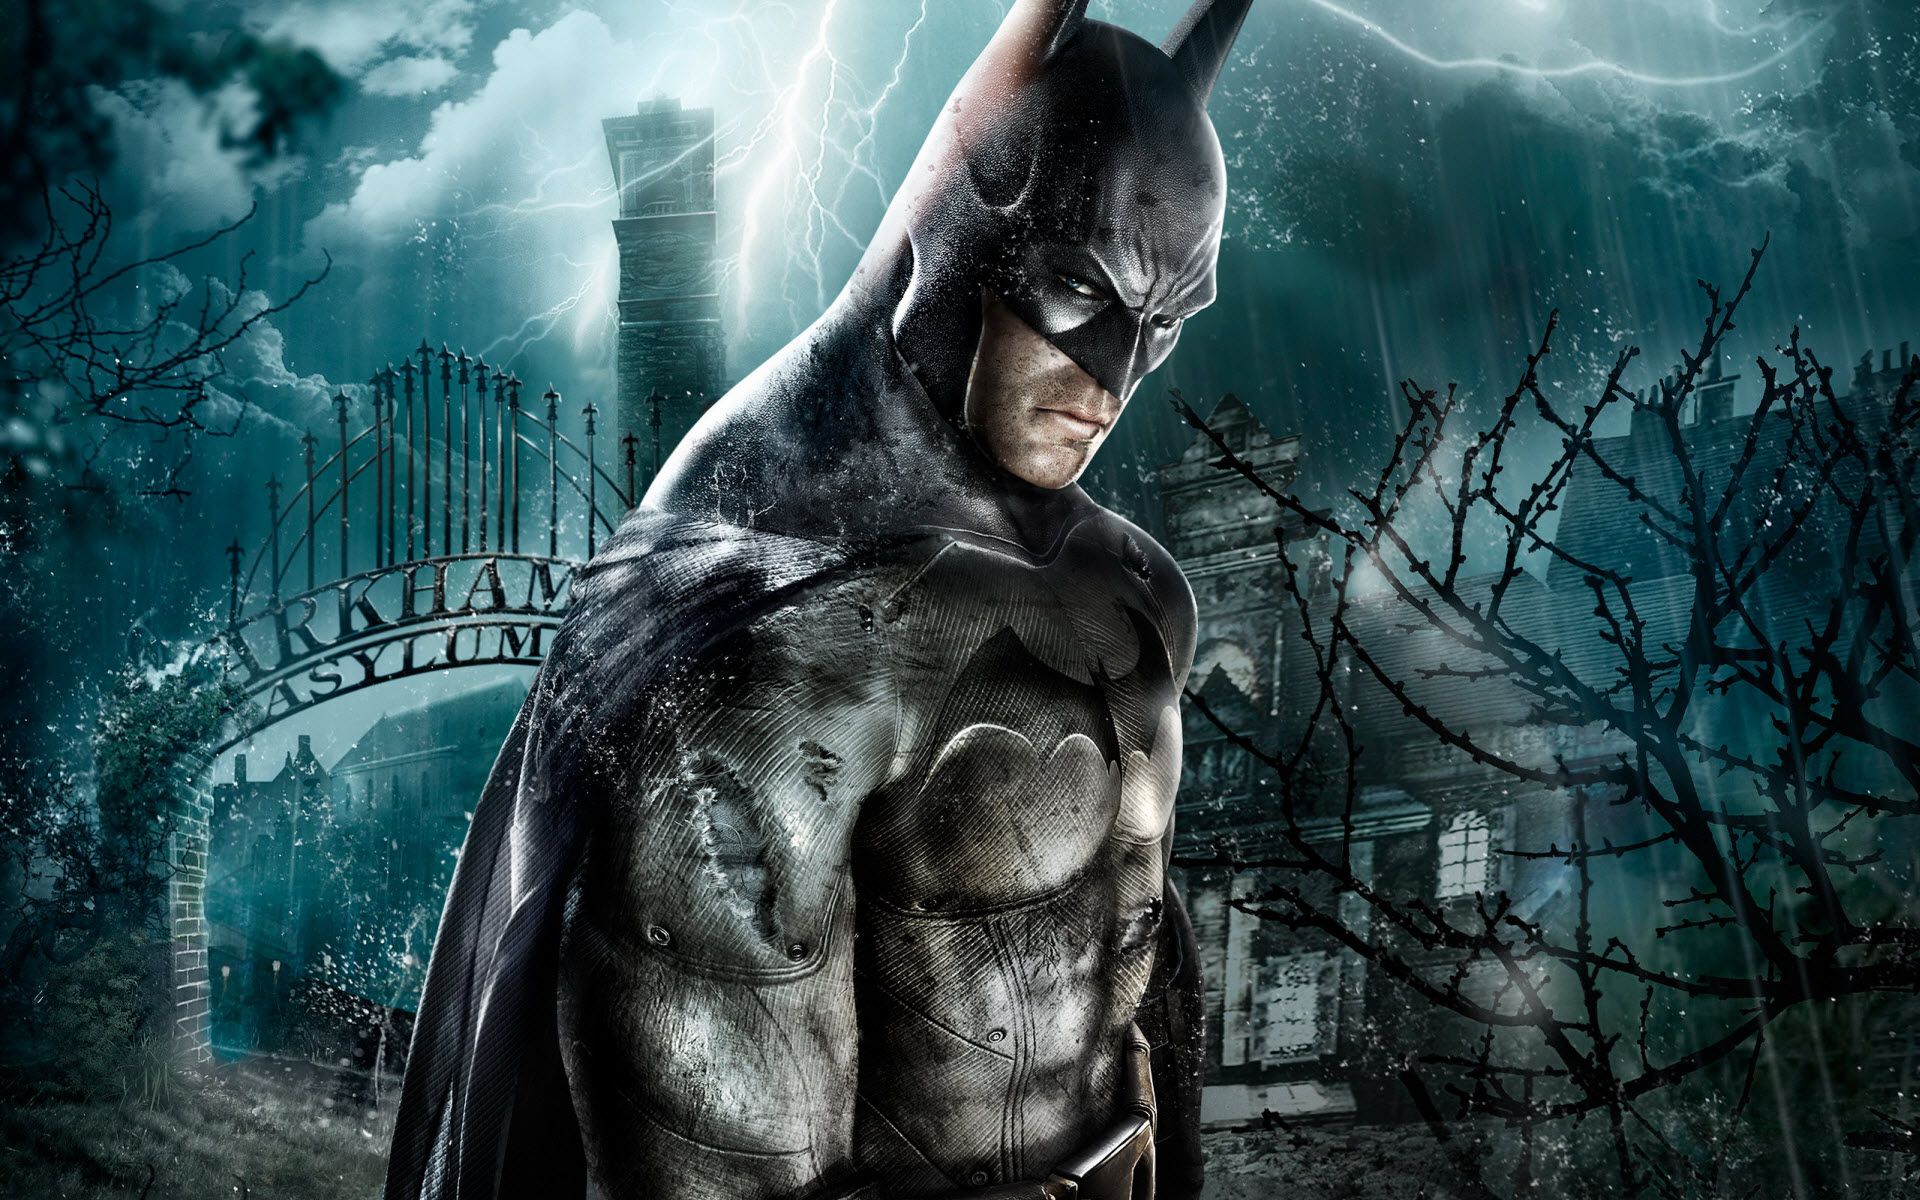 Batman Arkham Asylum Wallpaper